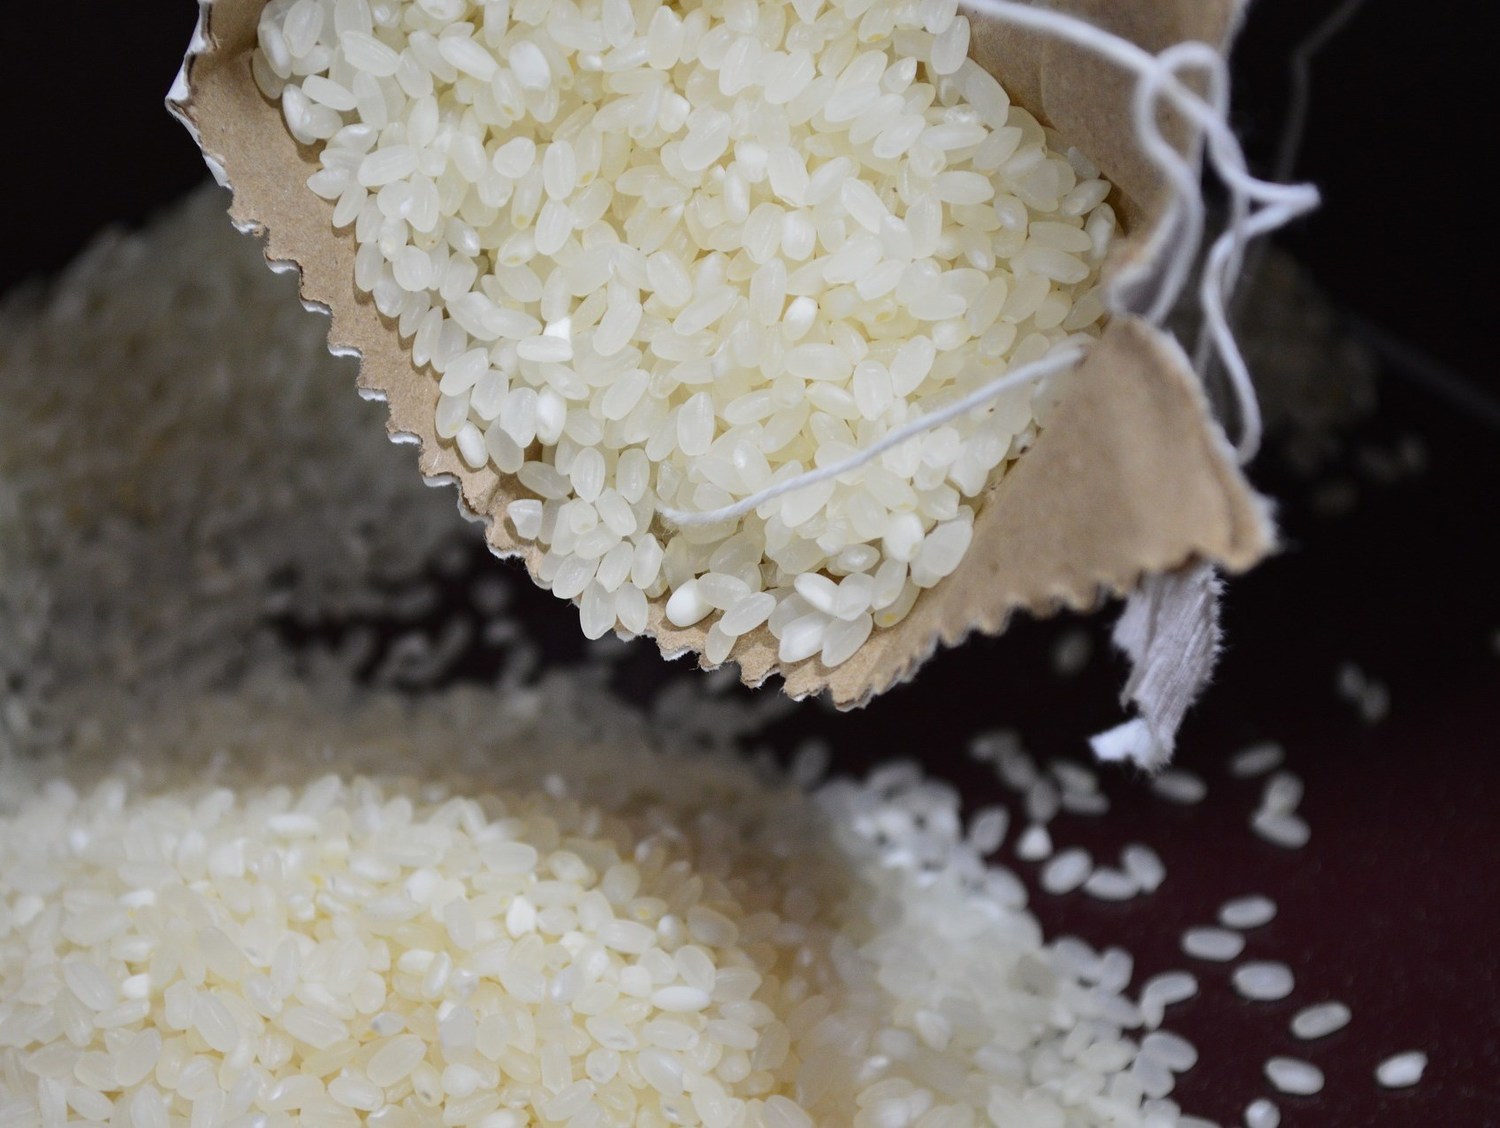 消保處查驗包裝米！20件中7件熱量標示錯誤不符規定